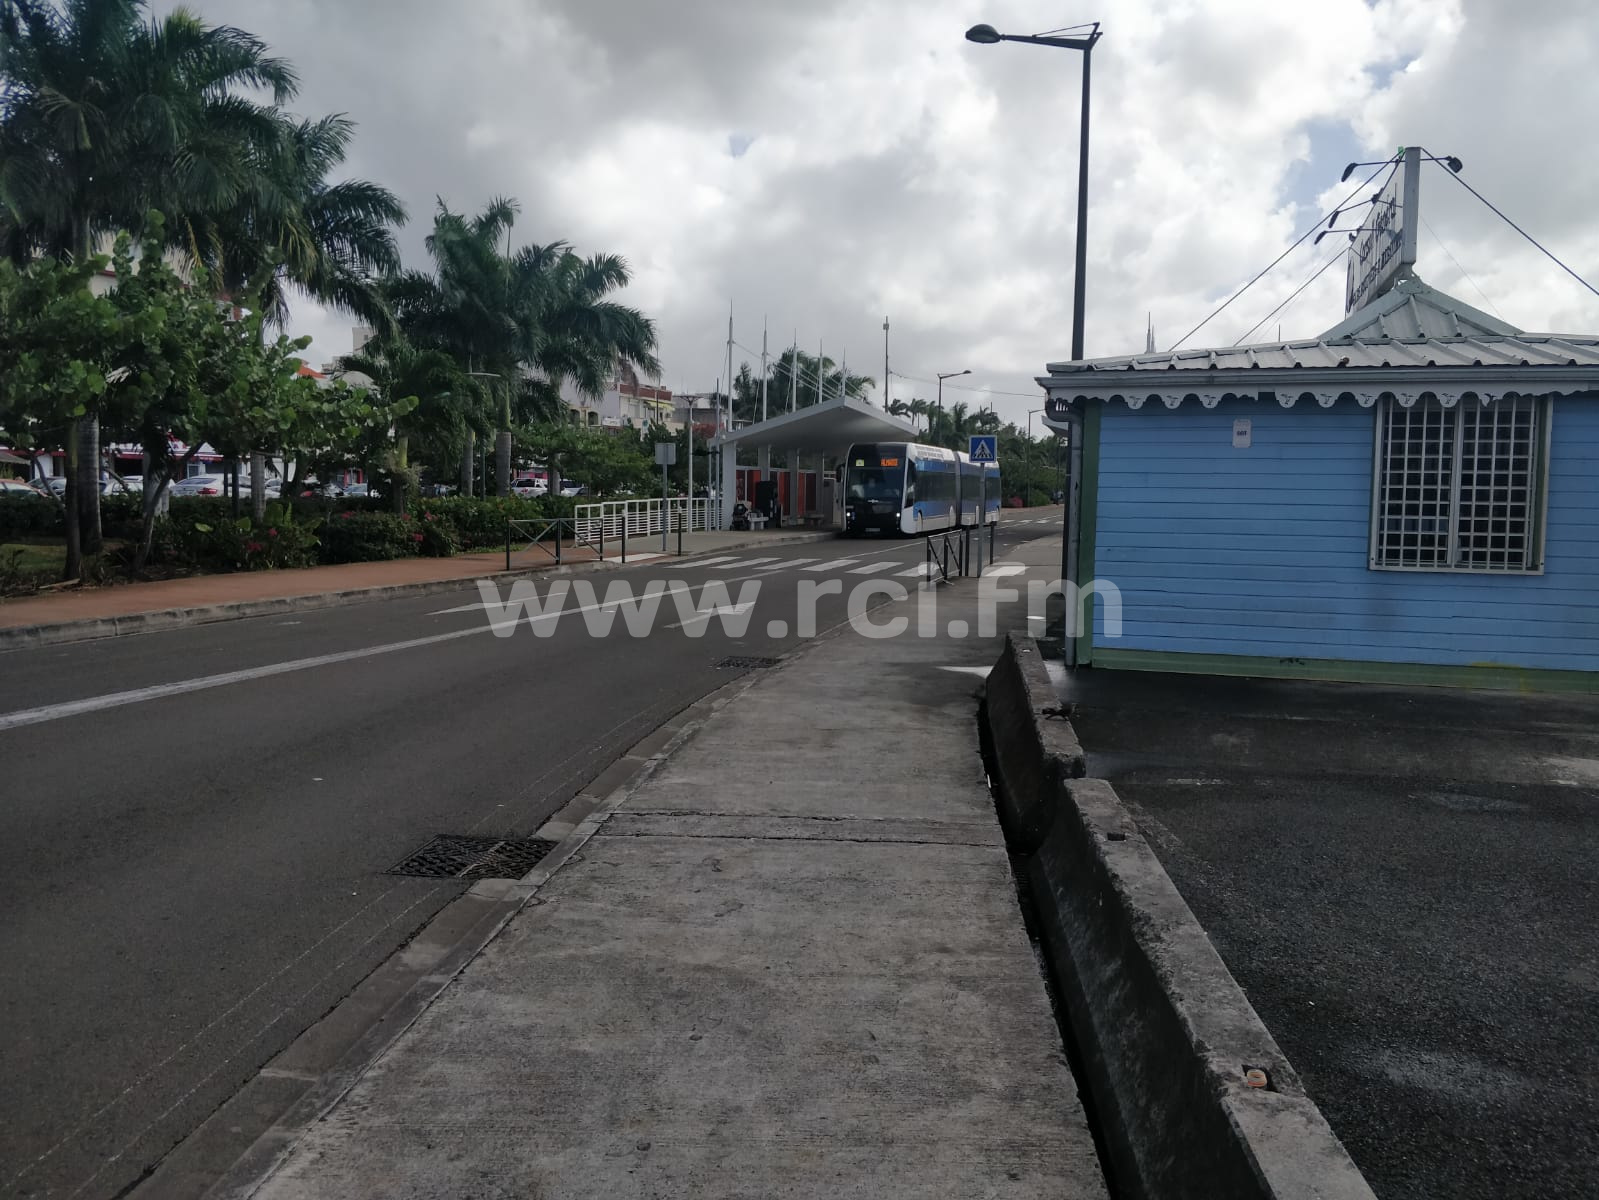     L'association de défense des usagers de transport de Martinique monte au créneau

